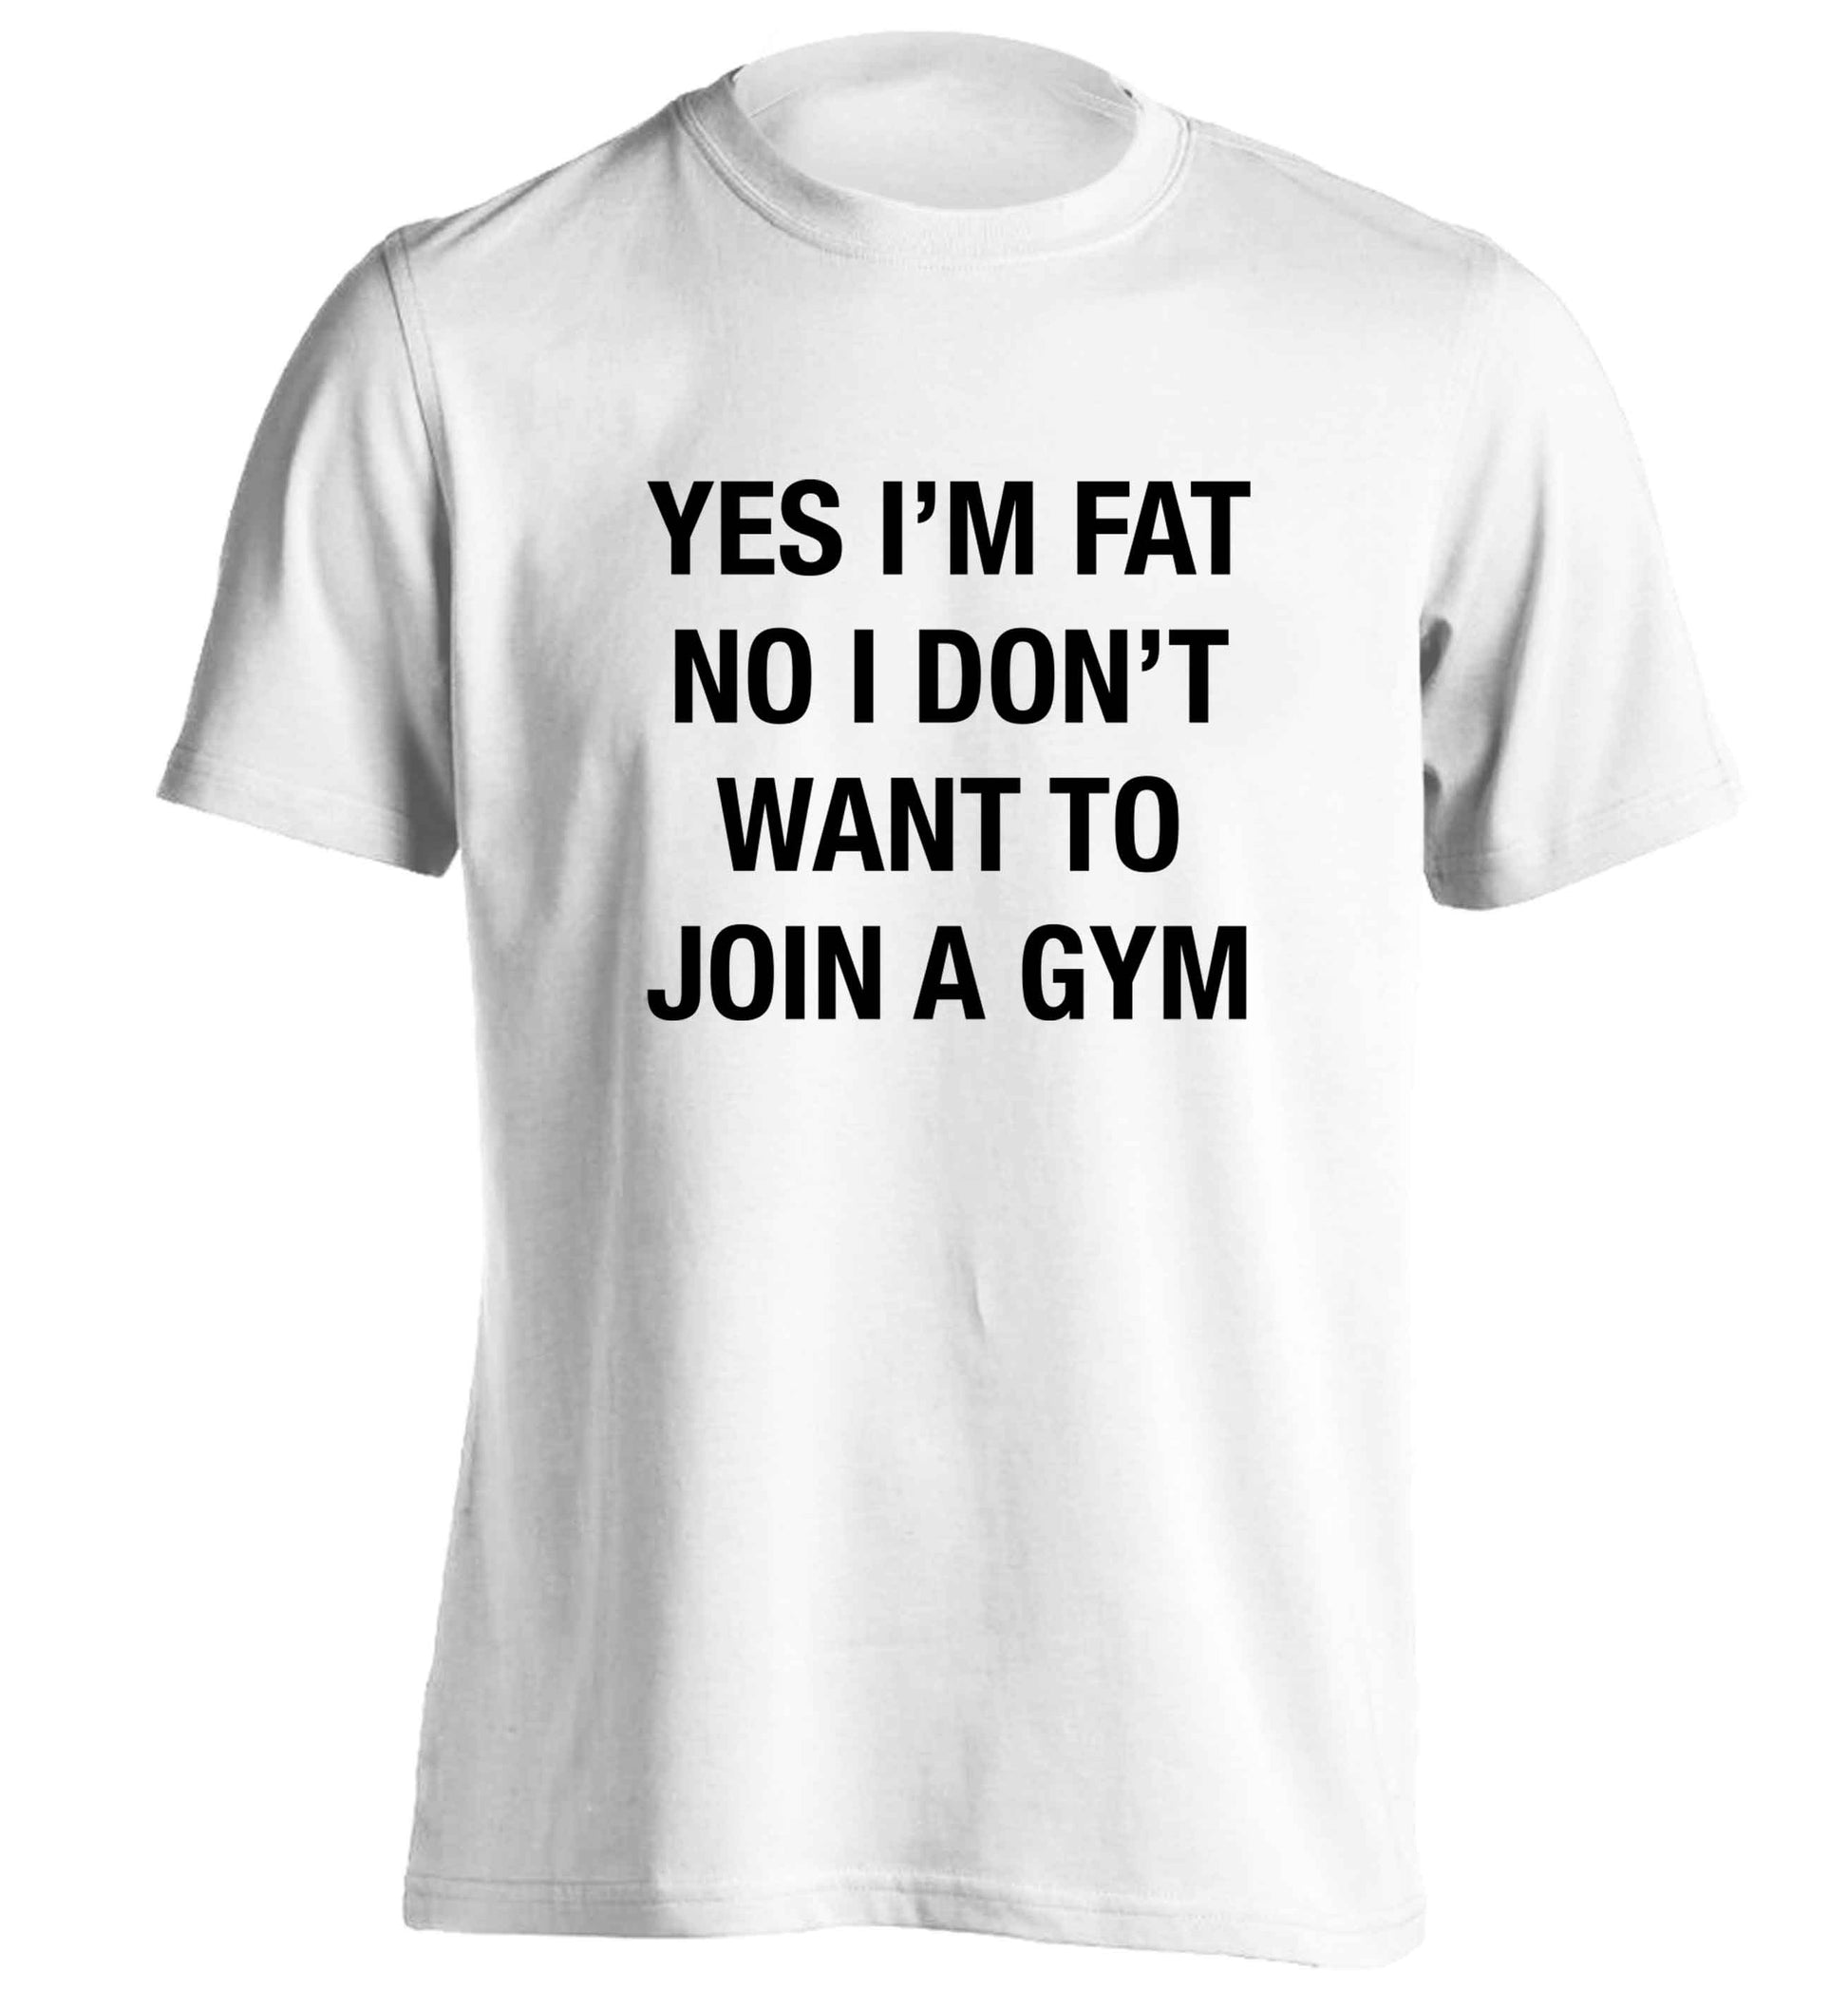 Yes I'm fat, no I don't want to go to the gym adults unisex white Tshirt 2XL